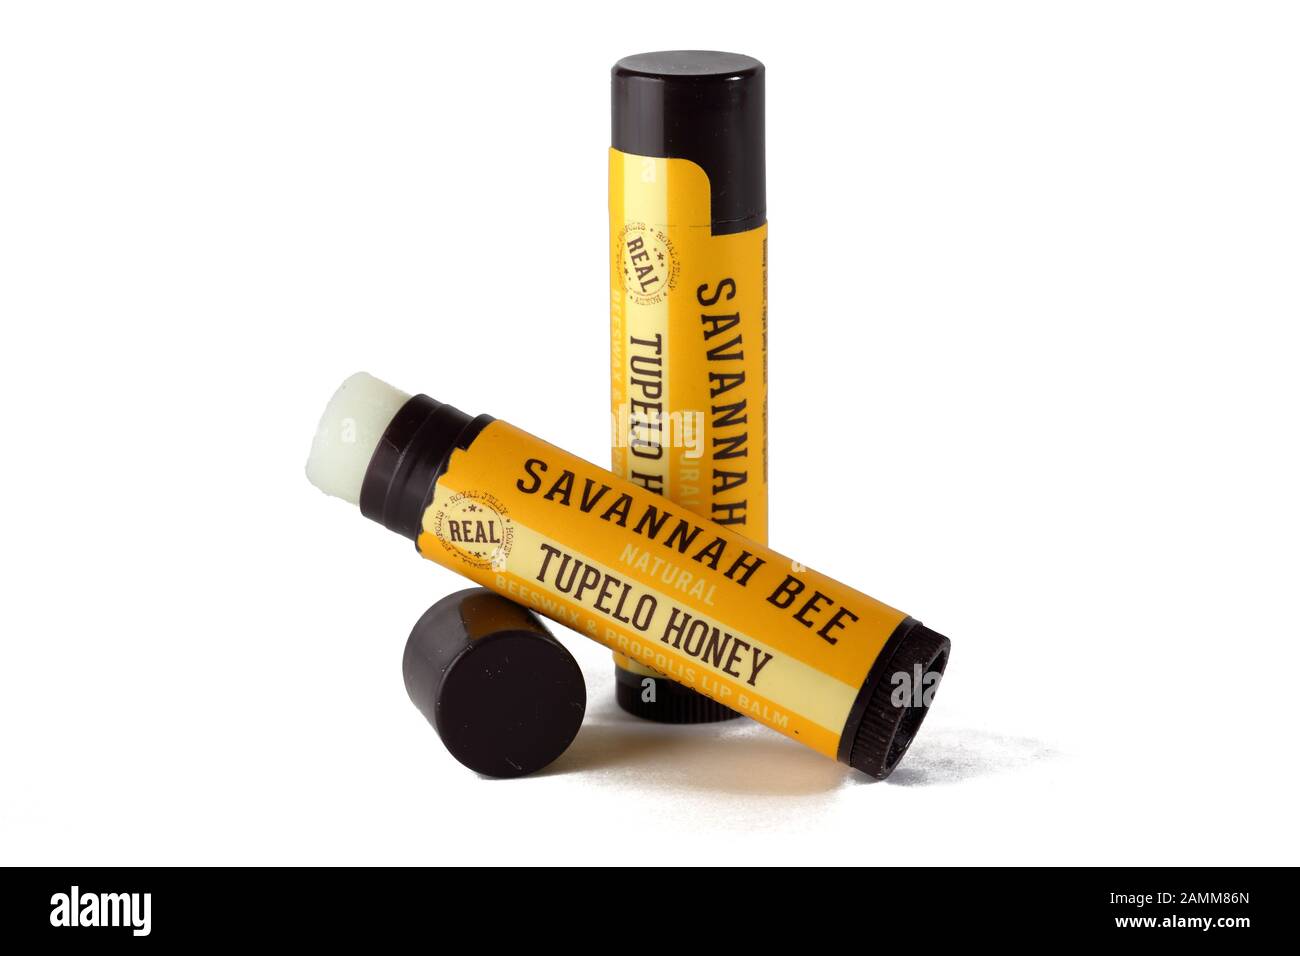 Deux bâtonnets de baume à lèvres Tupelo Honey de marque Savannah Bee isolés sur fond blanc. Image découpée pour l'illustration et l'usage éditorial. Banque D'Images